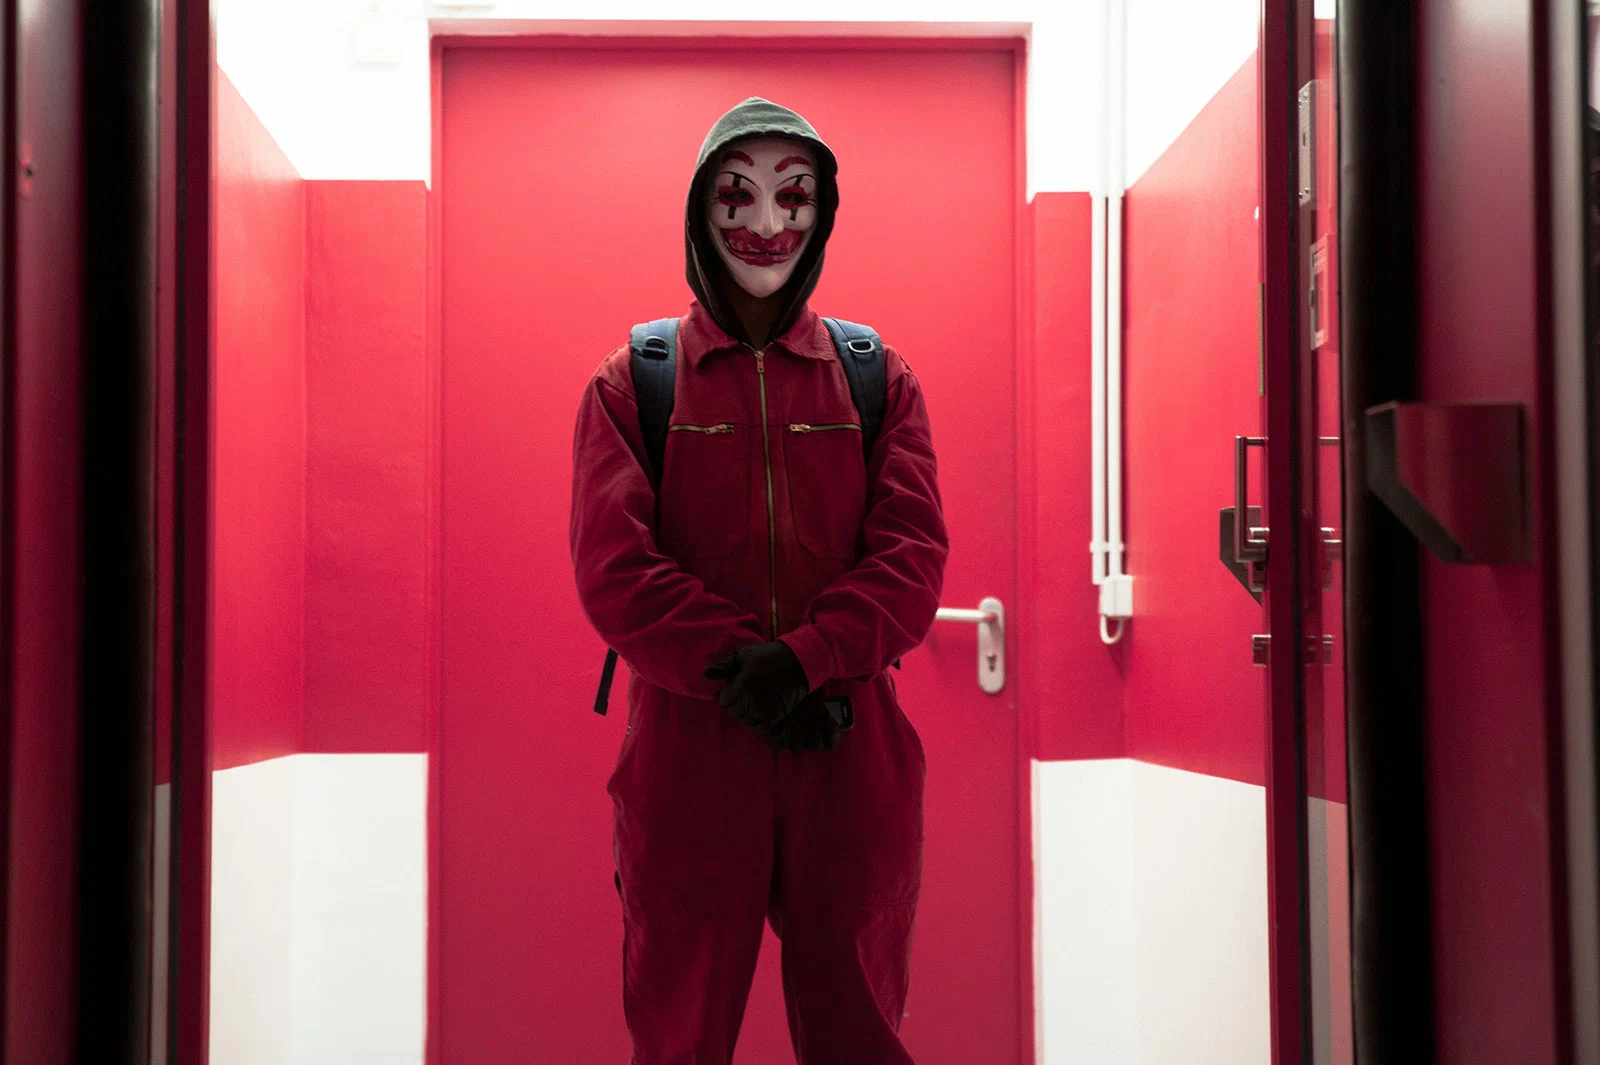 Кадр из фильма «Кто я». Человек в маске клоуна в зловещем красном освещении